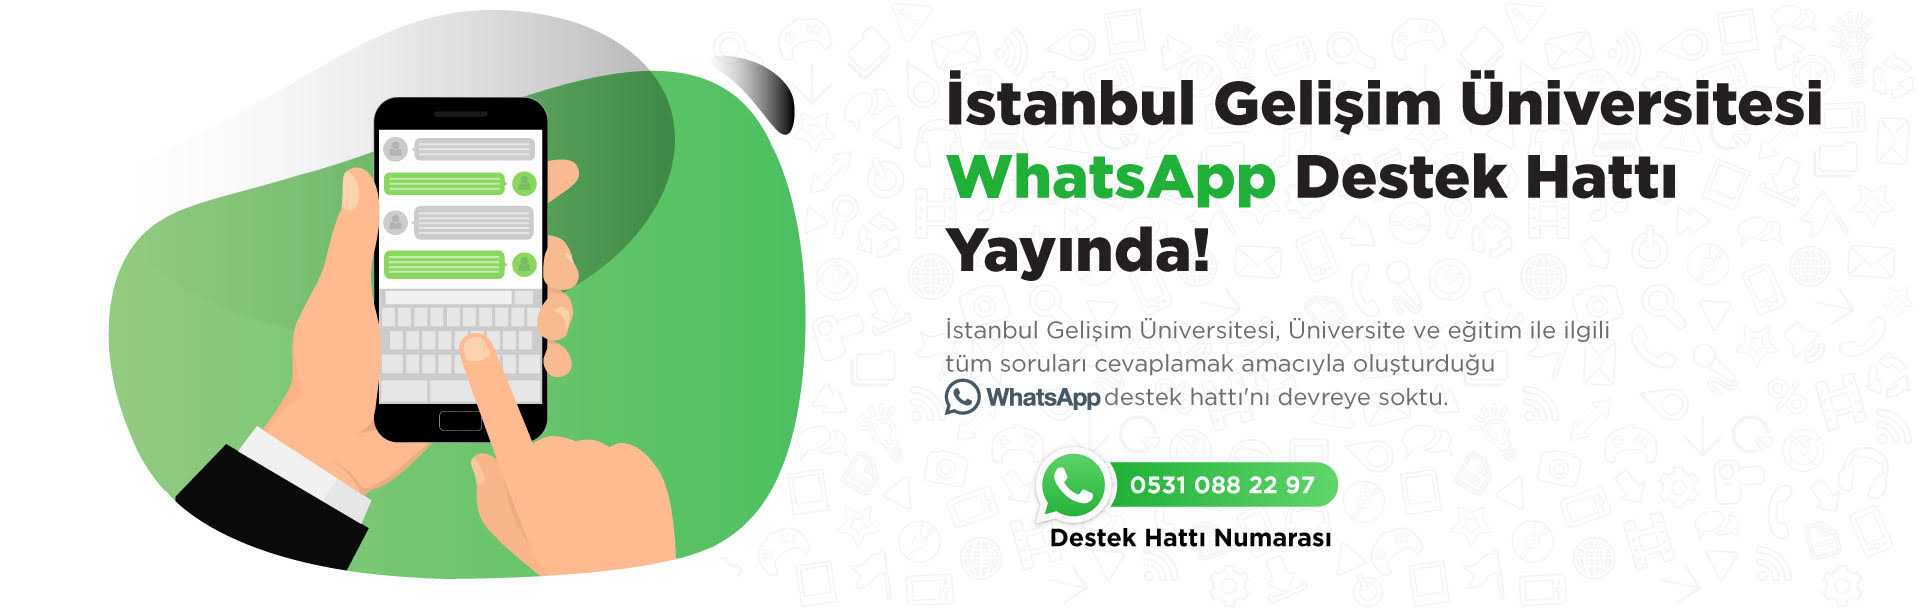 WhatsappDestekHatti